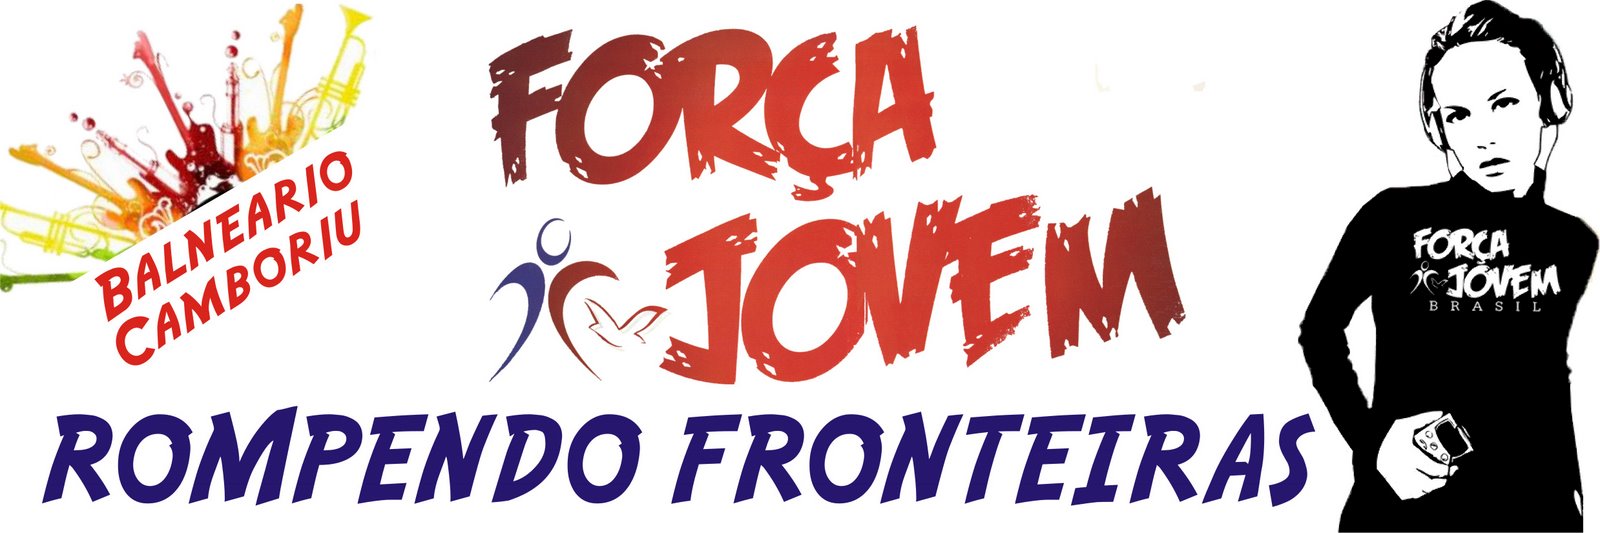 FORÇA JOVEM BALNEARIO CAMBORIU - DOMINGO 15 HORAS